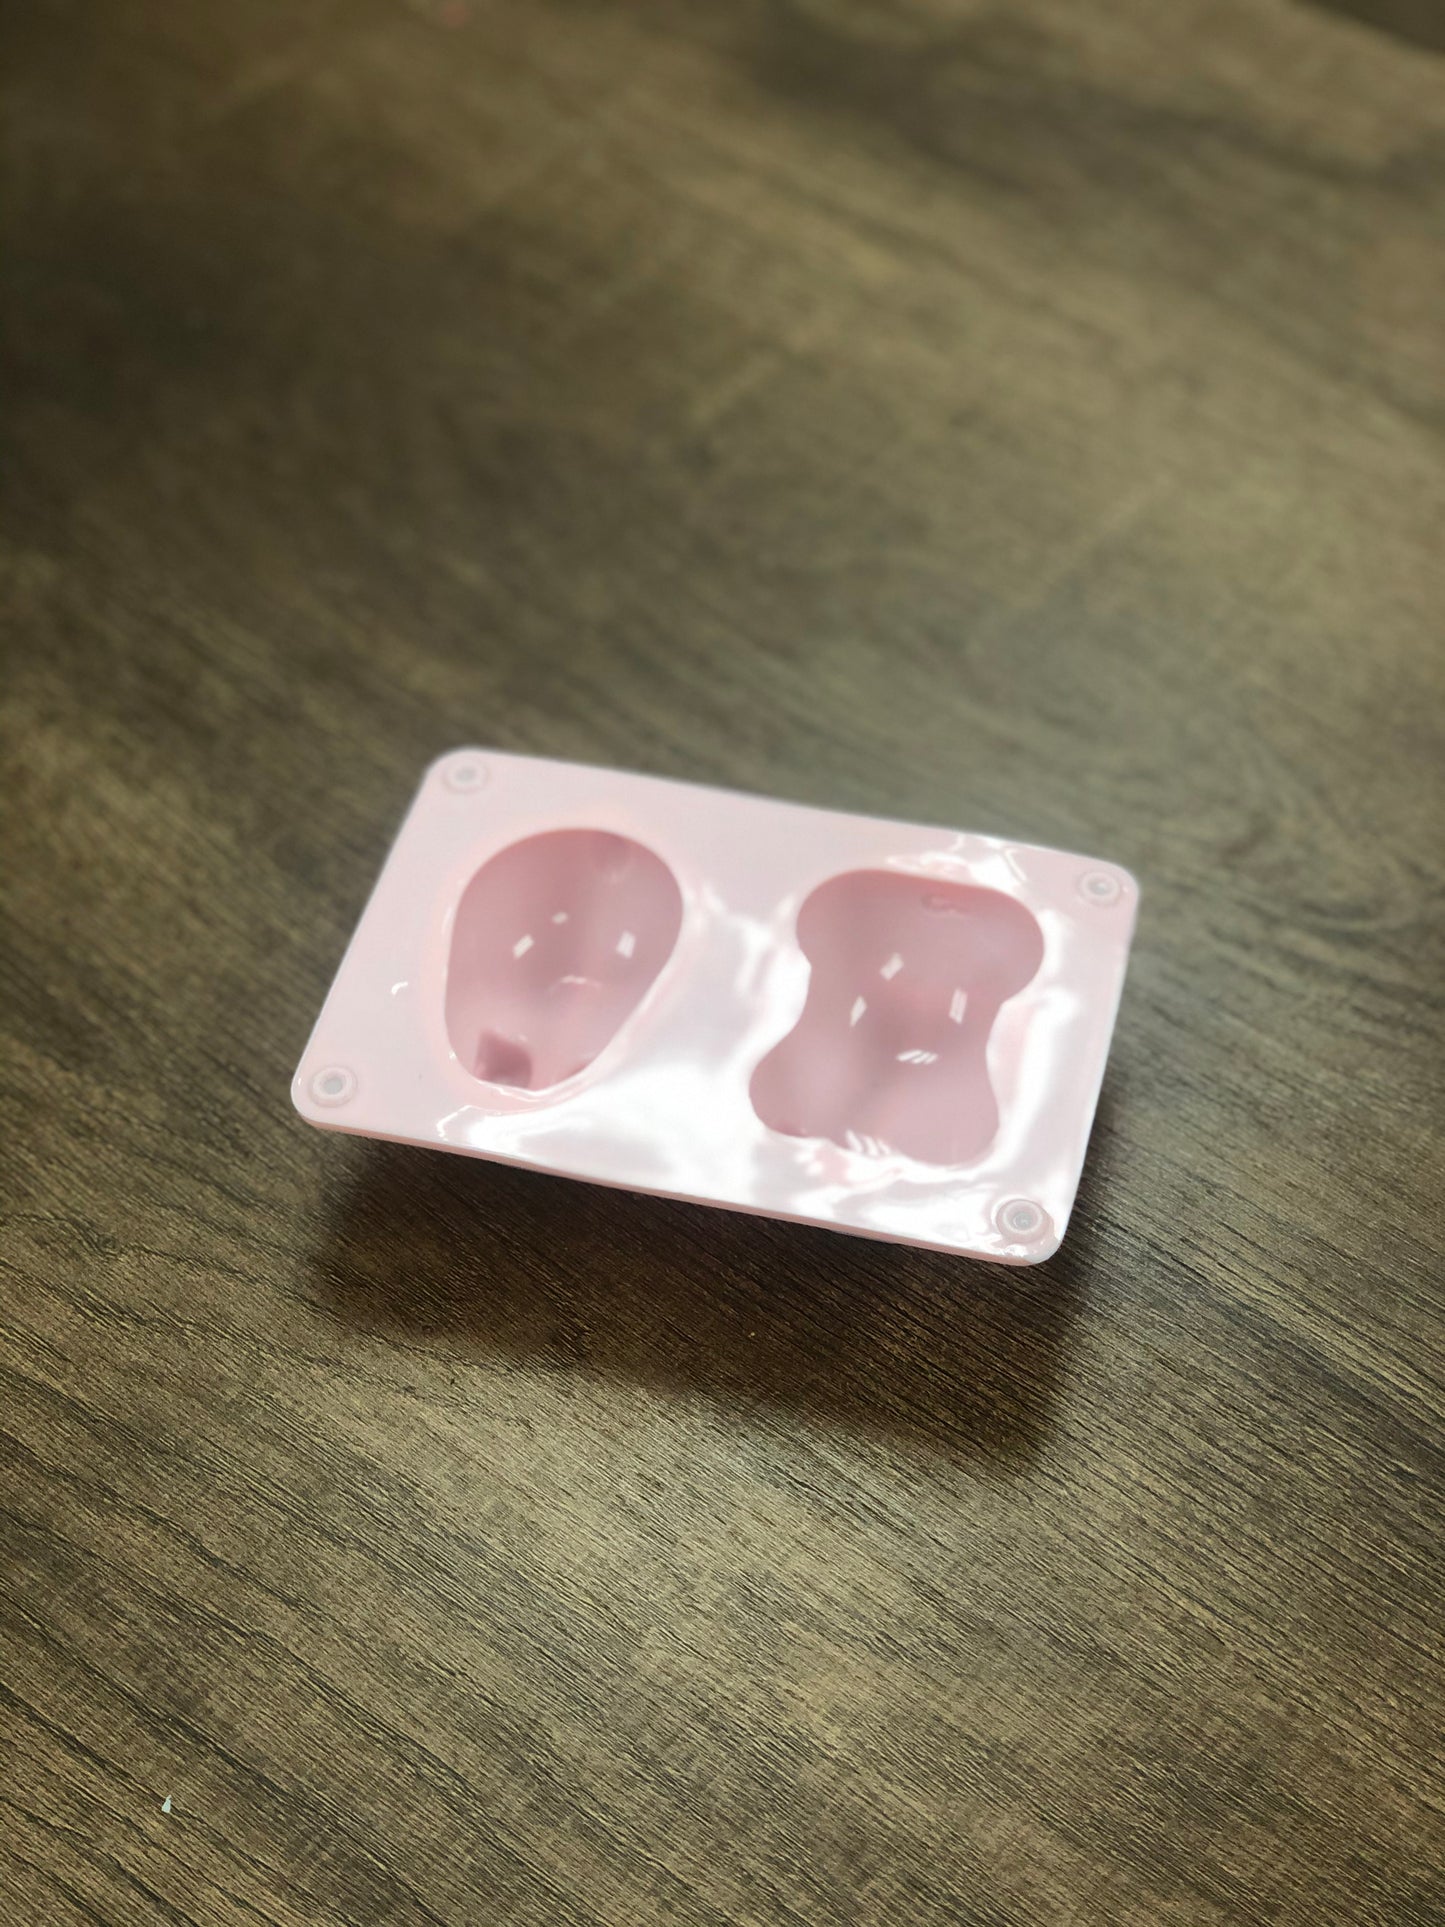 Pig & Rabbit Shaped Soap Making Mould 小豬小兔形矽膠模